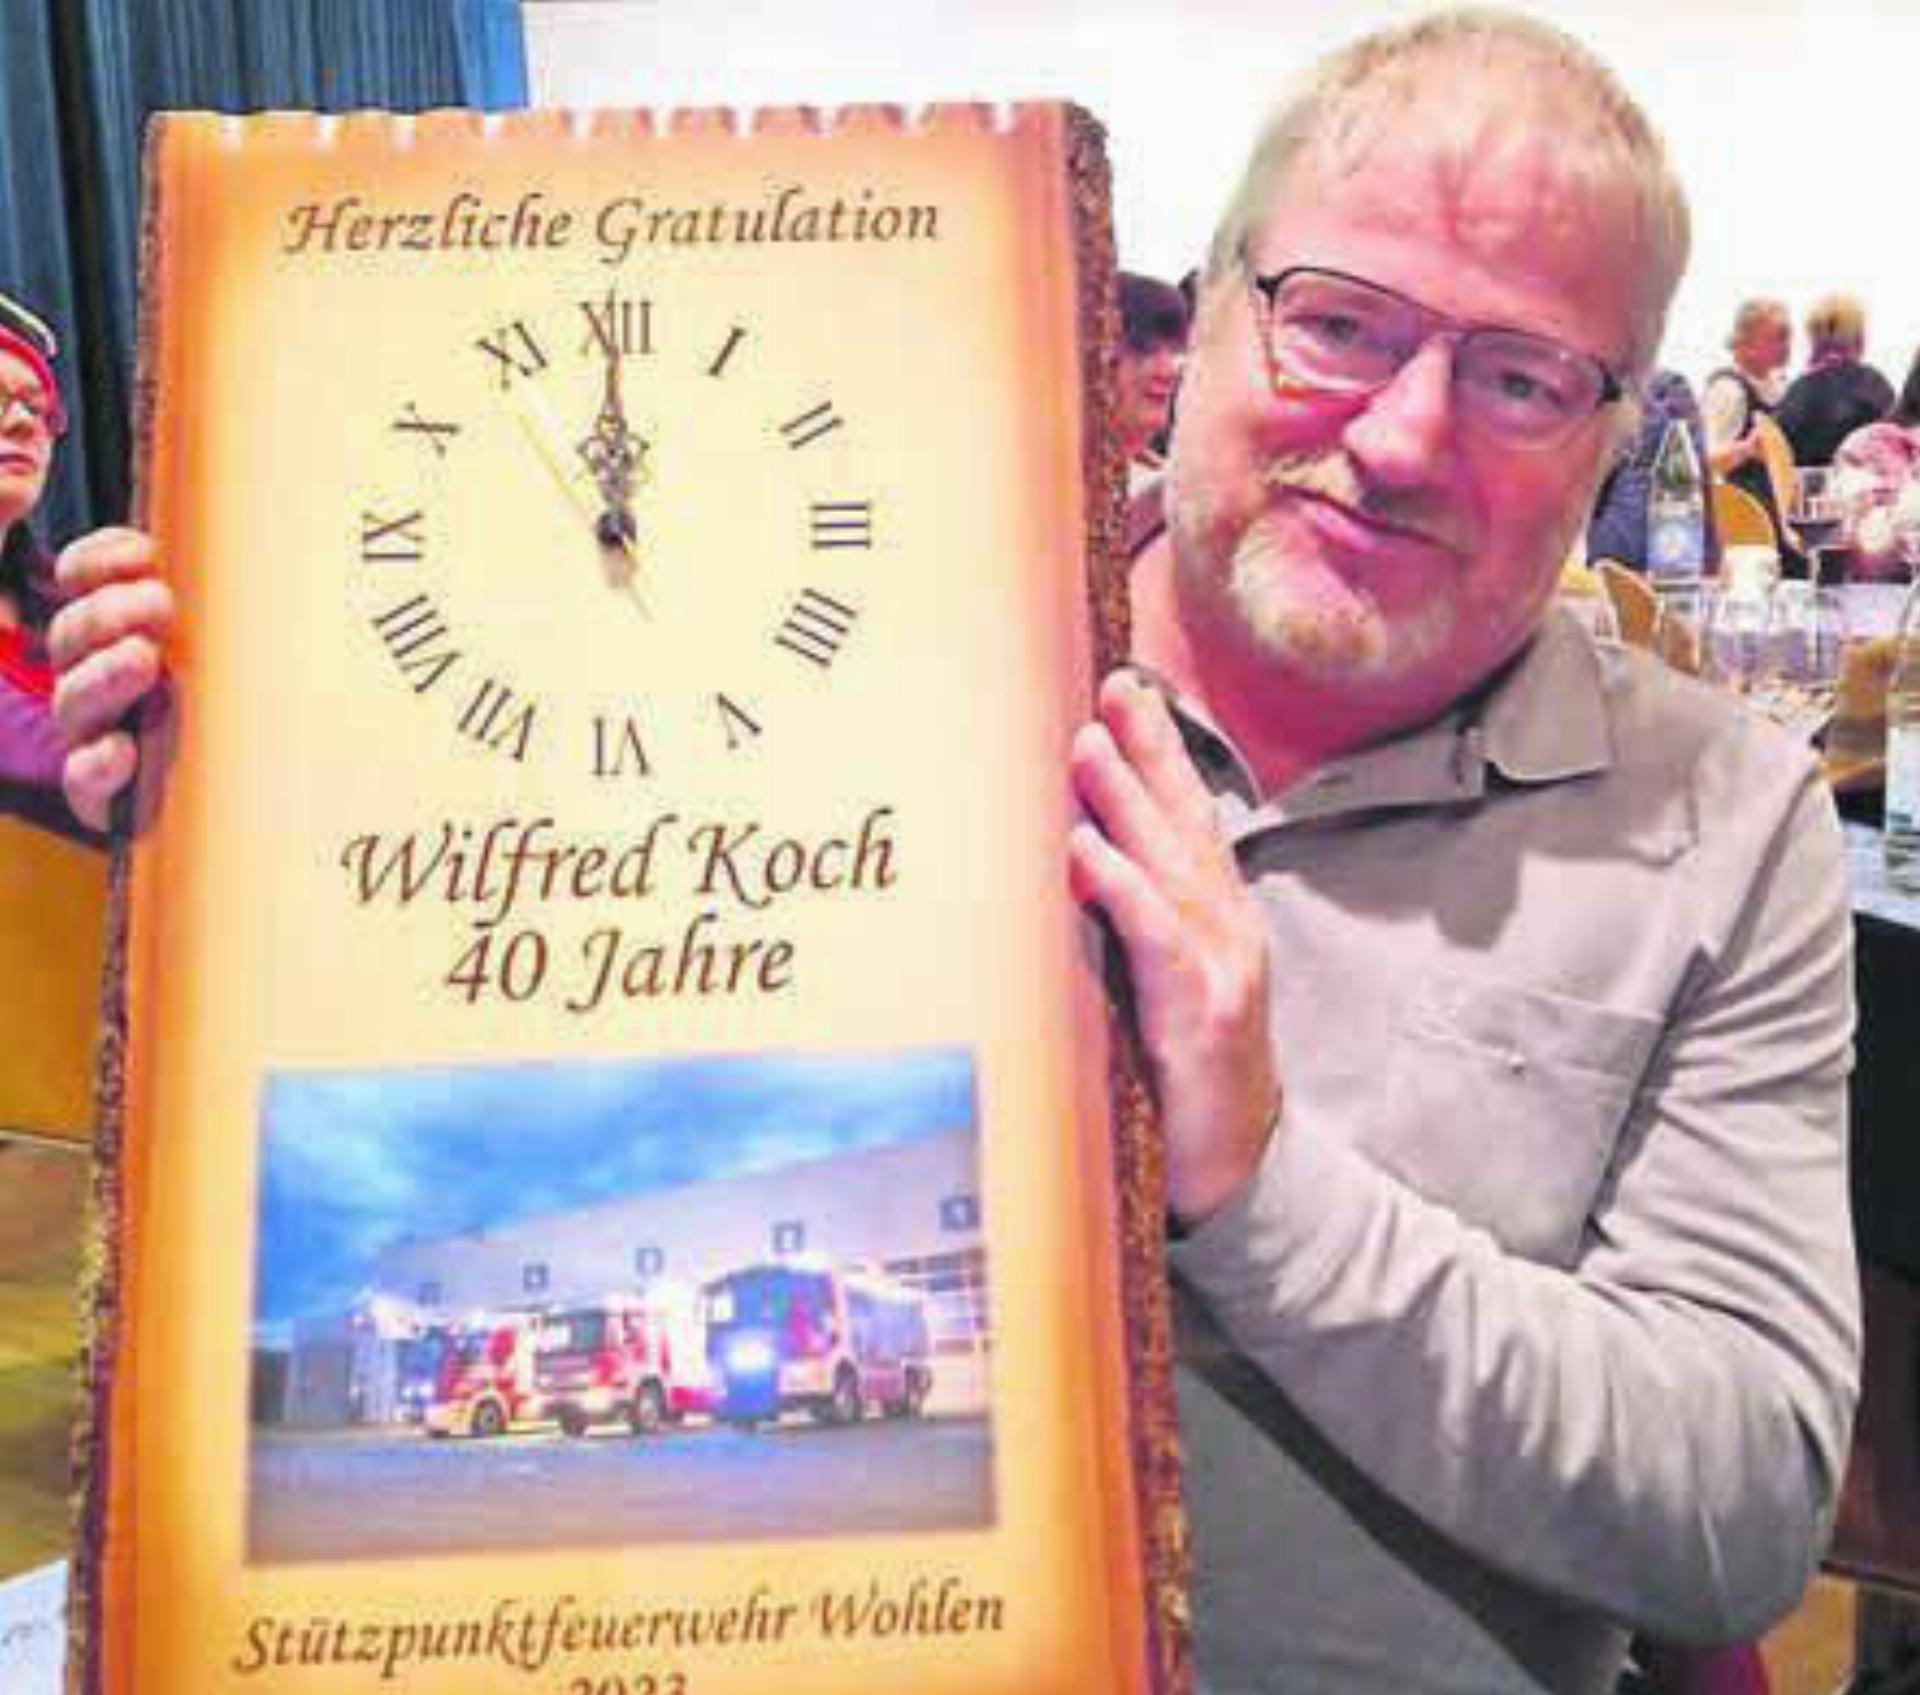 Wilfred Koch wird für seine Treue von 40 Jahren zur Feuerwehr Wohlen geehrt. Bild: pd